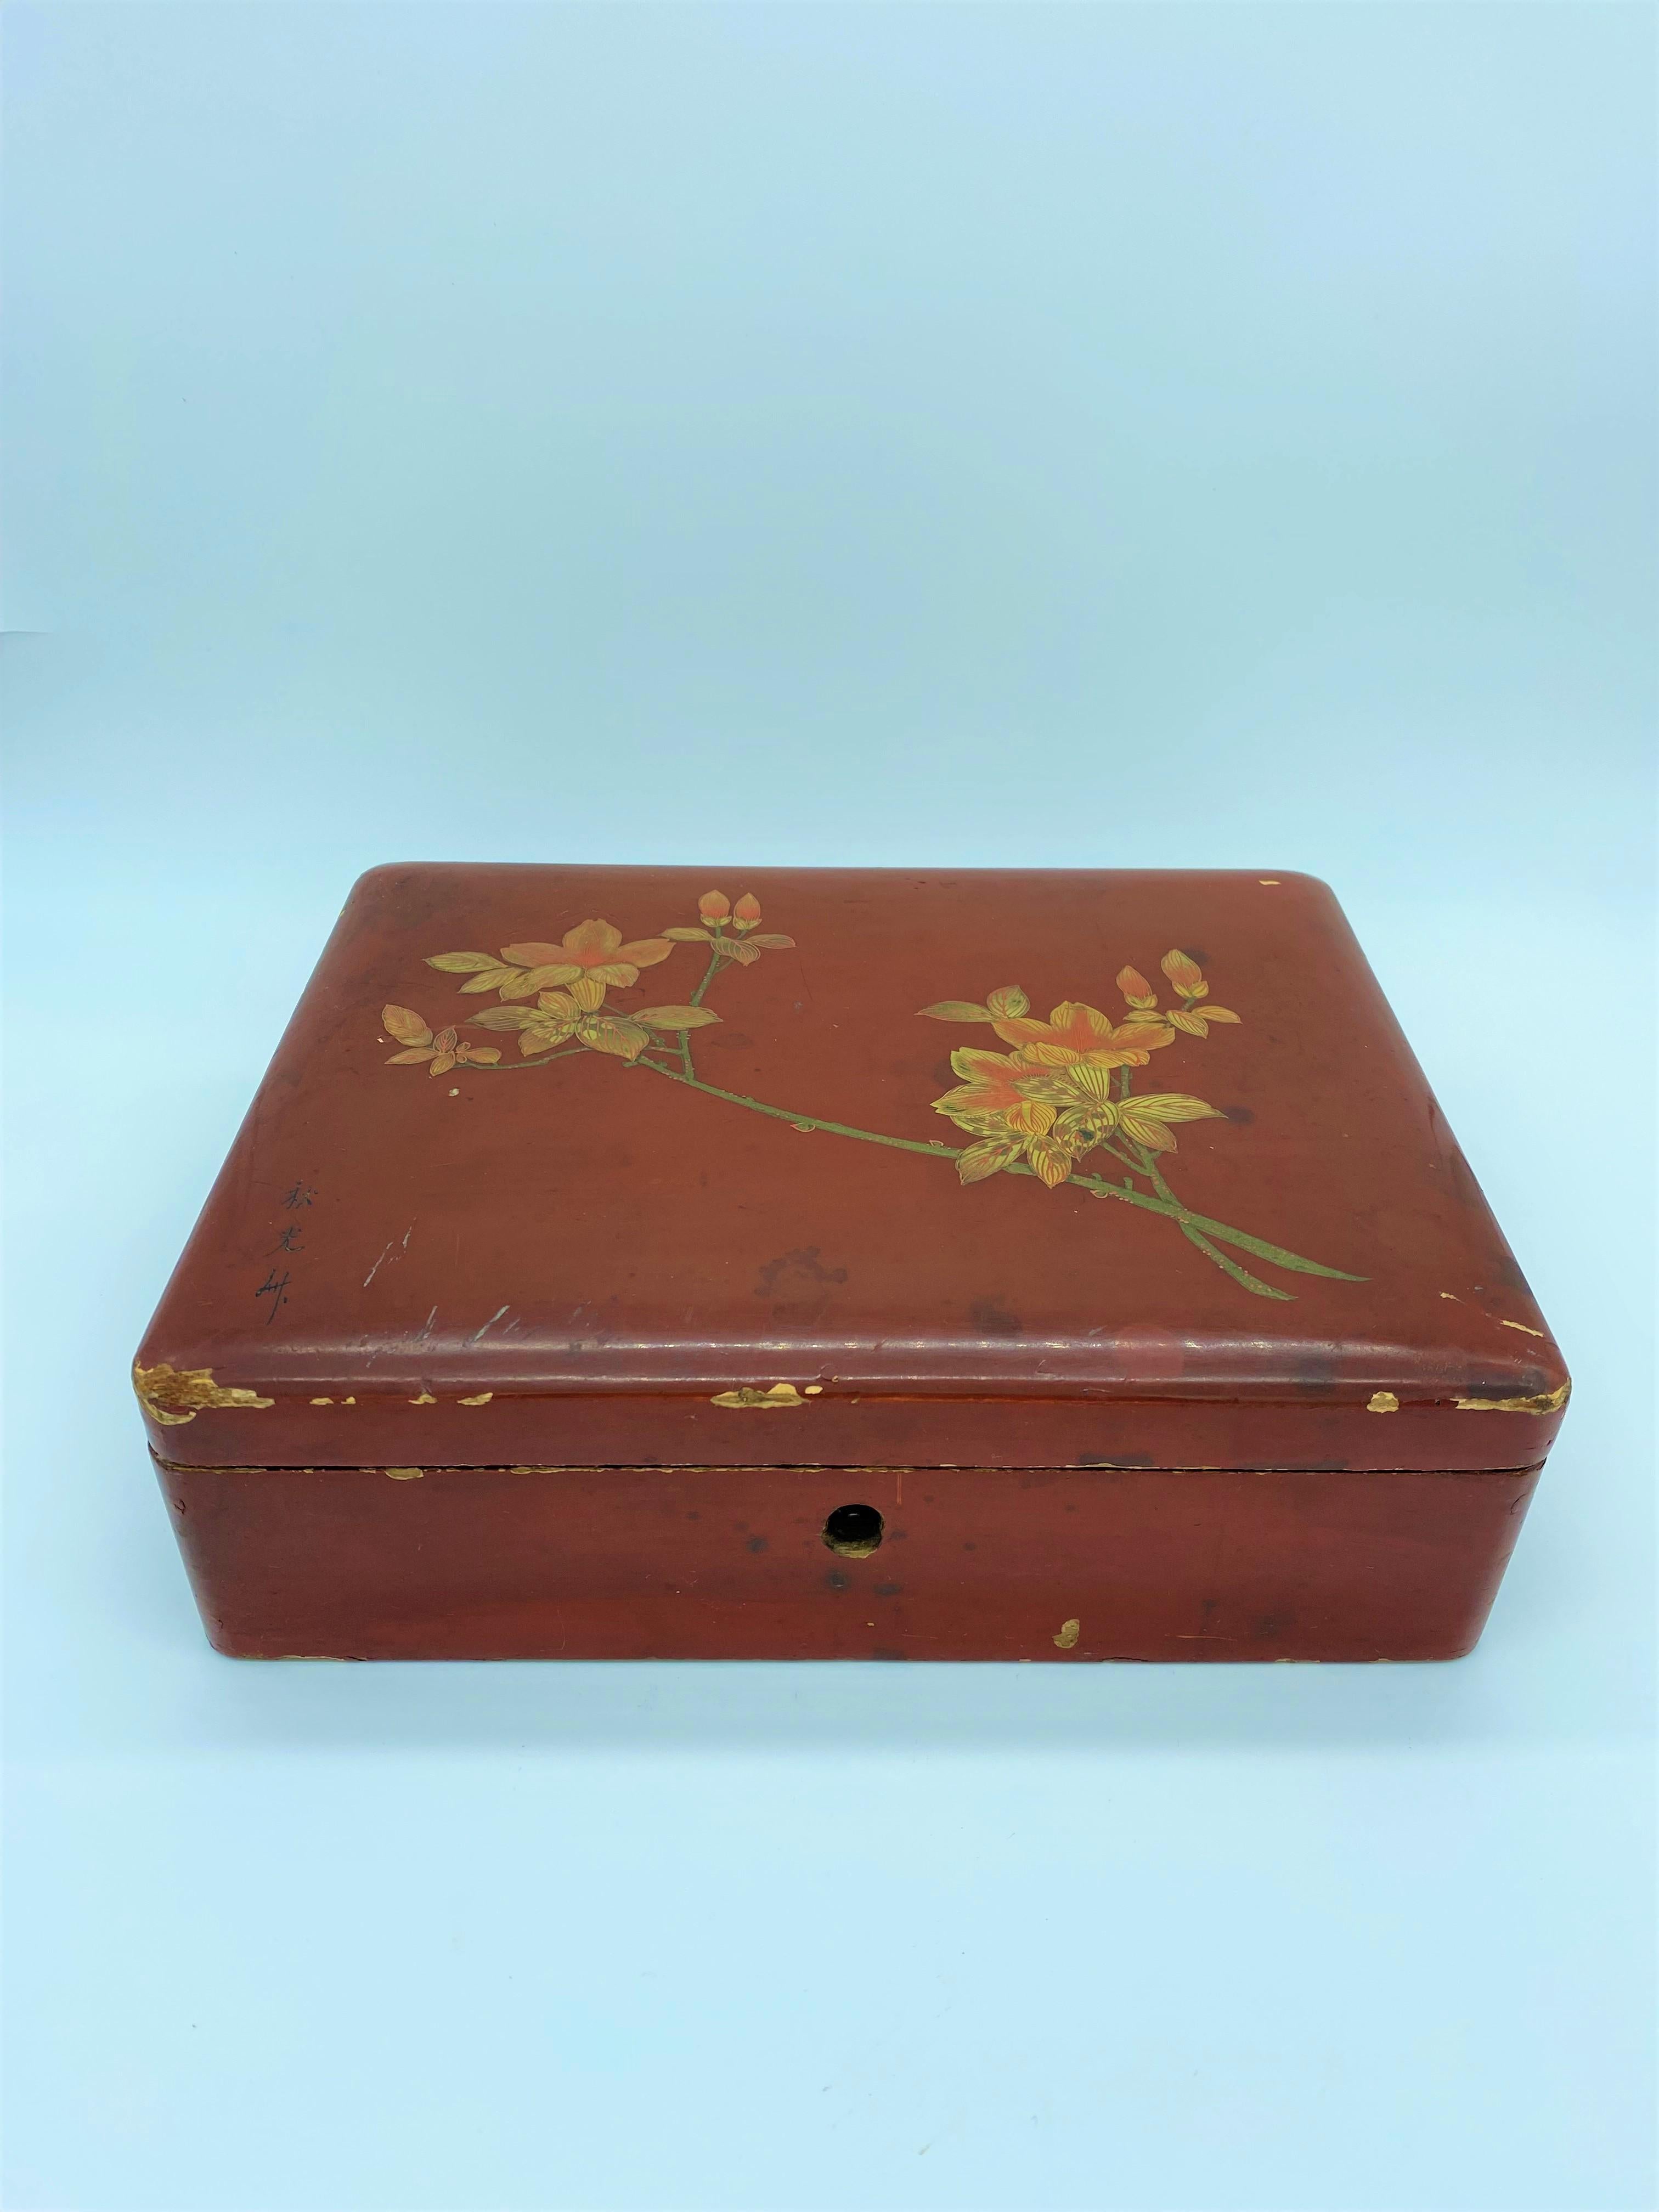 Schöne japanische Kiste aus rot lackiertem Holz. Der Deckel ist mit blühenden Magnolienzweigen verziert und von der Künstlerin signiert. Die Innenseite der Schachtel ist mit einer mit Goldglitter versehenen Farbe überzogen.
Japan Ende des 19.